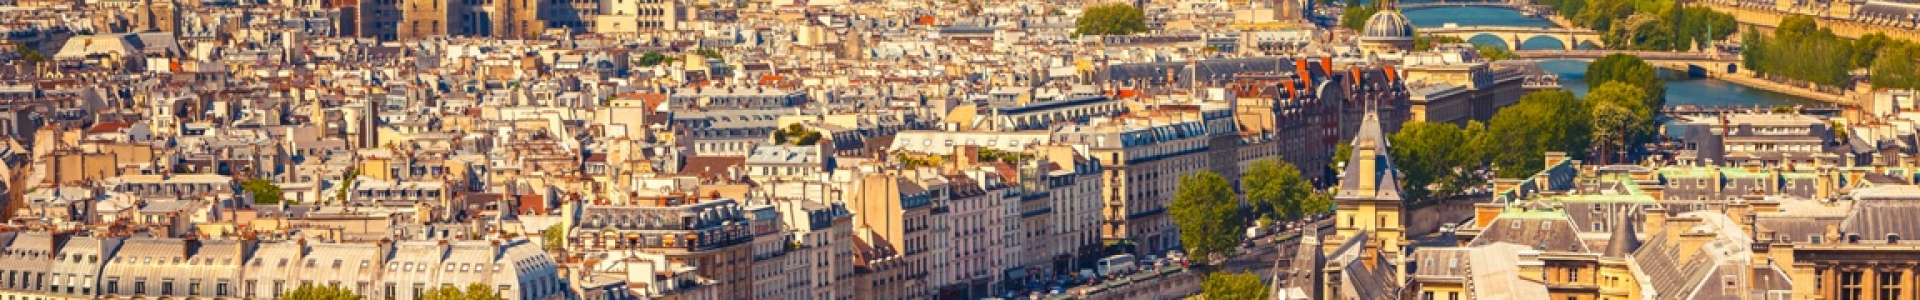 Voyage Privé : ventes flash week-ends en France, hôtels 4*-5*, jusqu'à - 70%